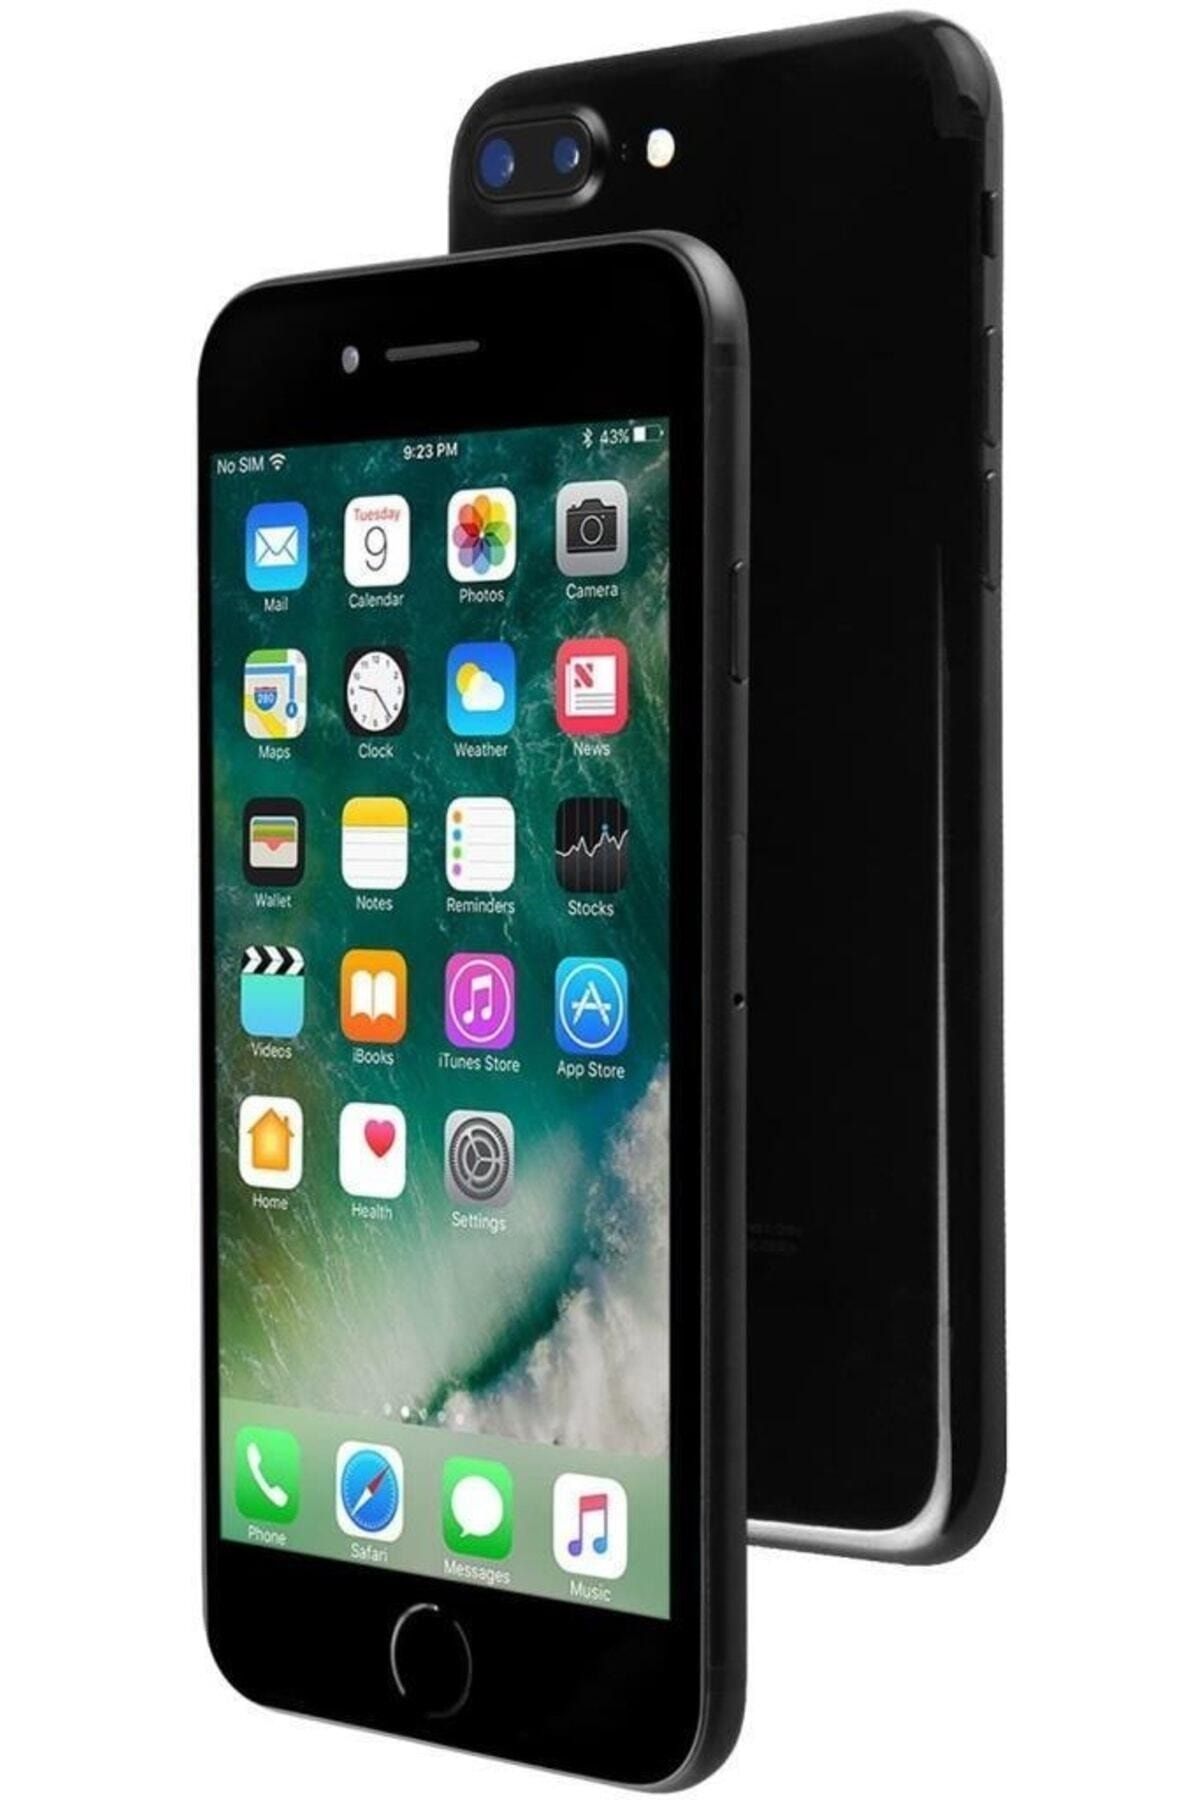 Apple Yenilenmiş Iphone 7 256 Gb Jet Black 12 Ay Garantili Fiyatı